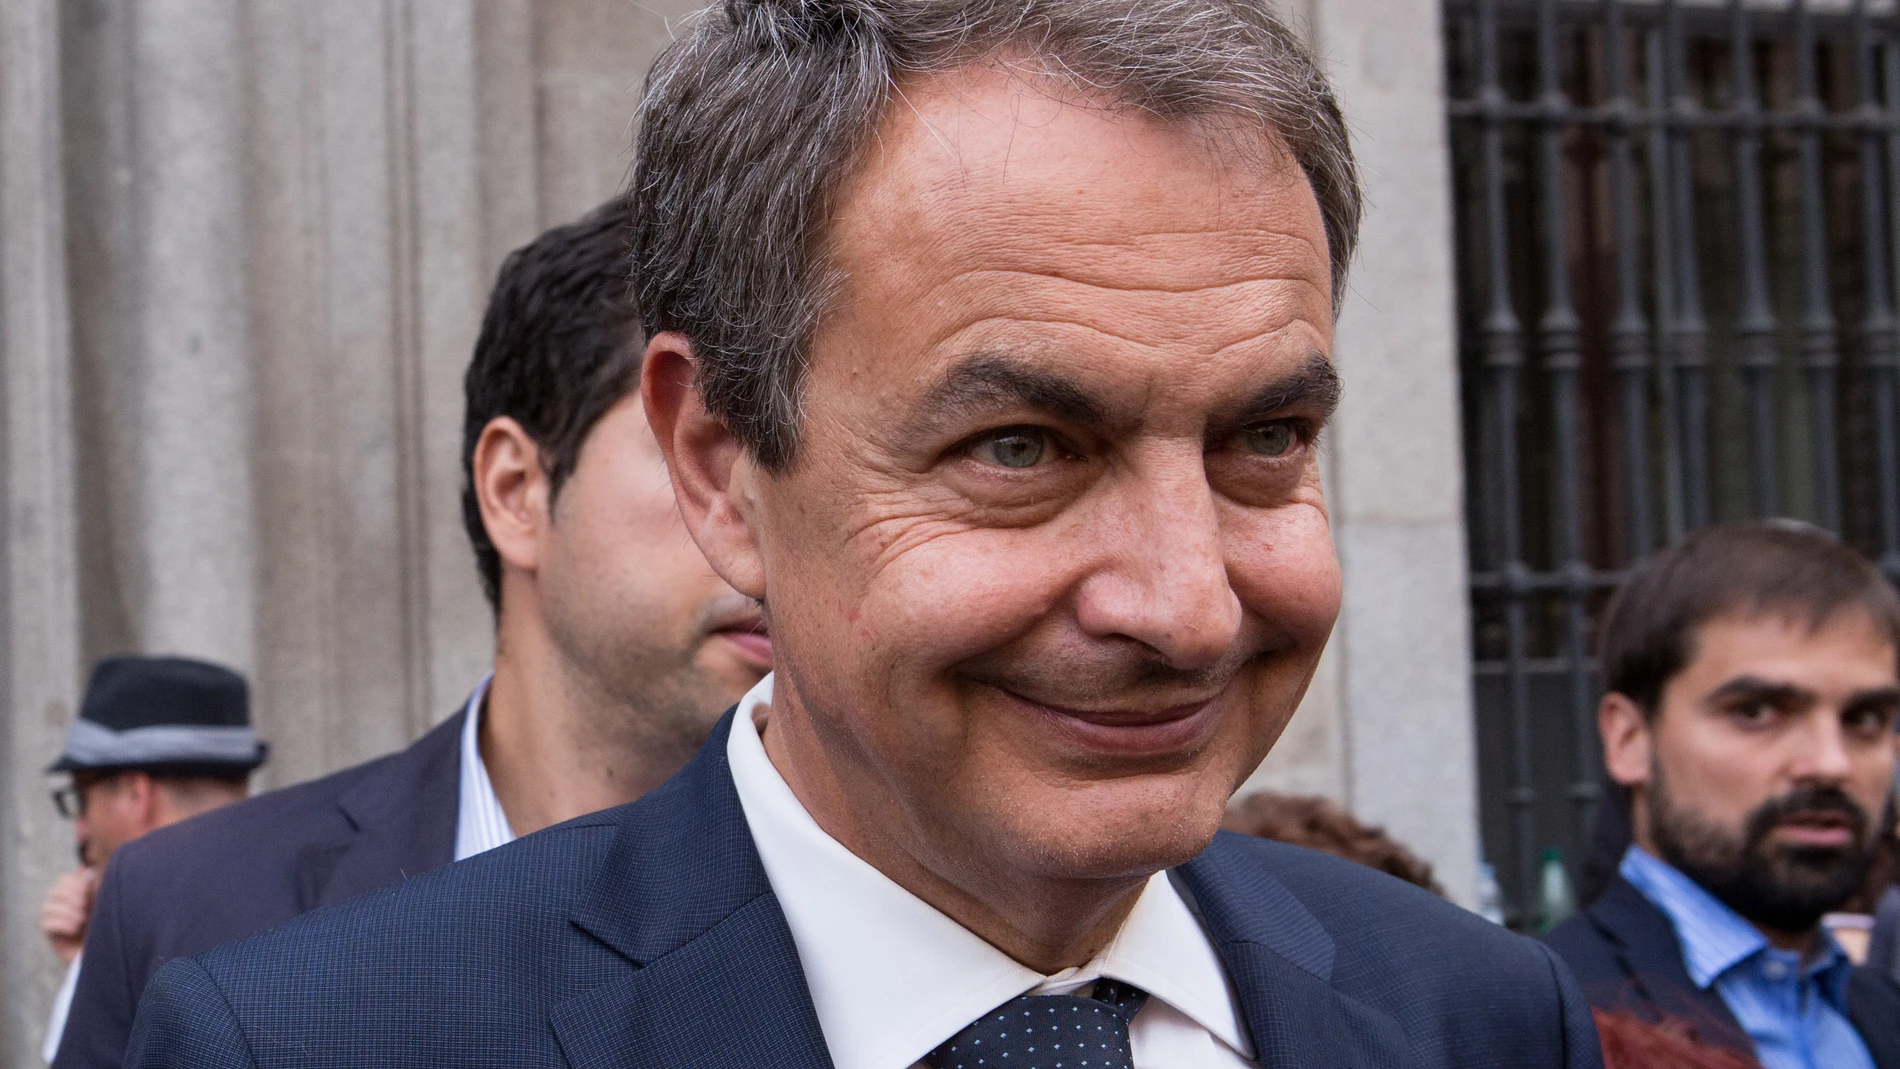 Efemérides del 18 de abril: José Luis Rodríguez Zapatero